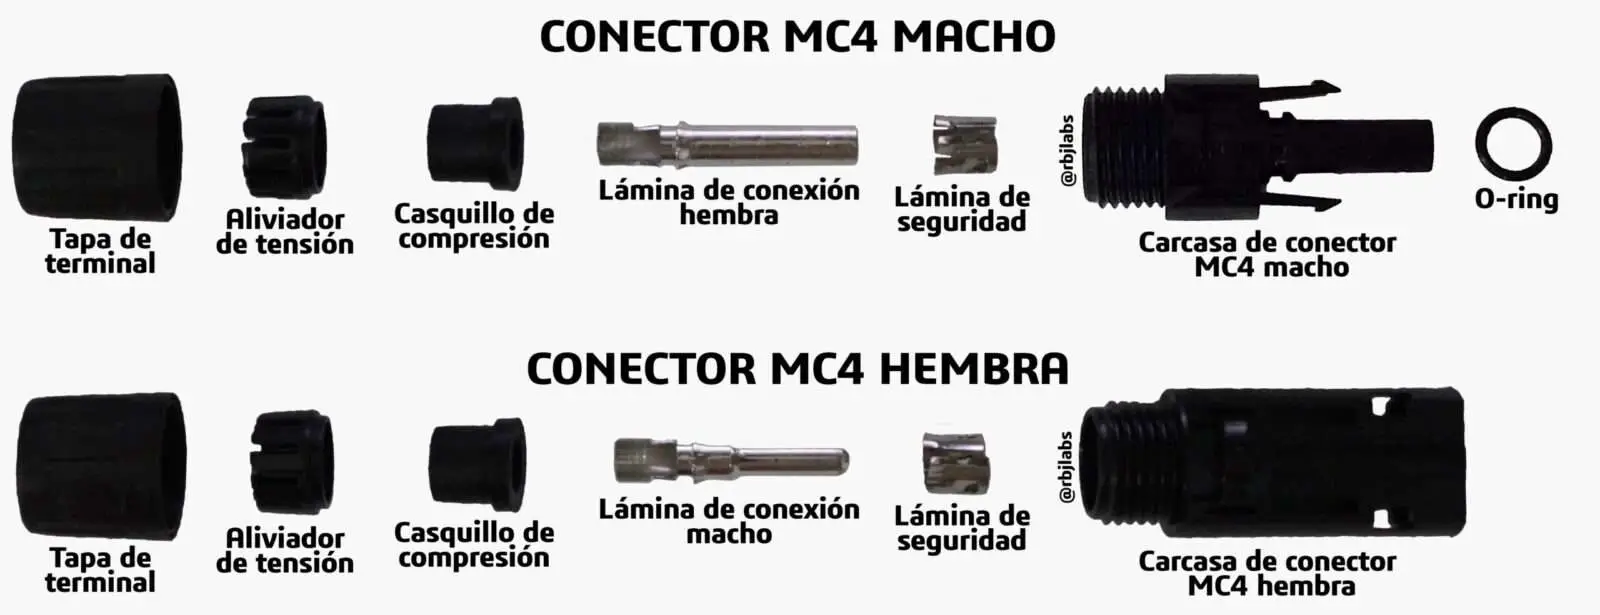 partes-de-un-conector-mc4-macho-y-partes-de-un-conector-mc4-hemb